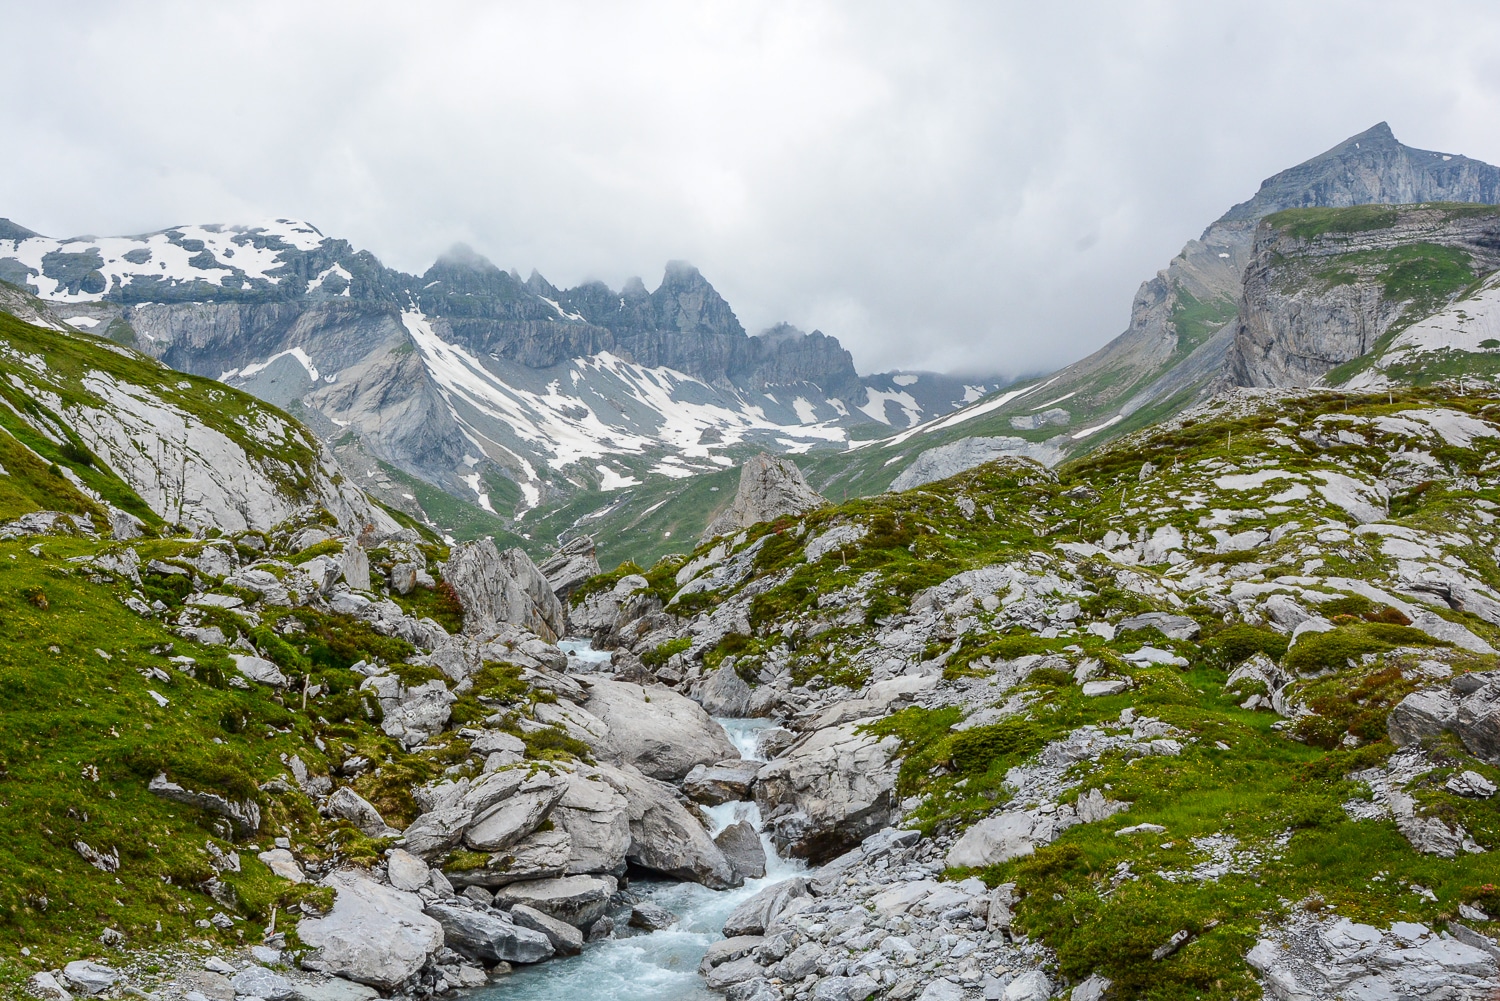 Flims und Laax, Bündner Berge: Wandern, Mountainbiken und Seen in der Schweiz - Wasserweg Trutg di Flem